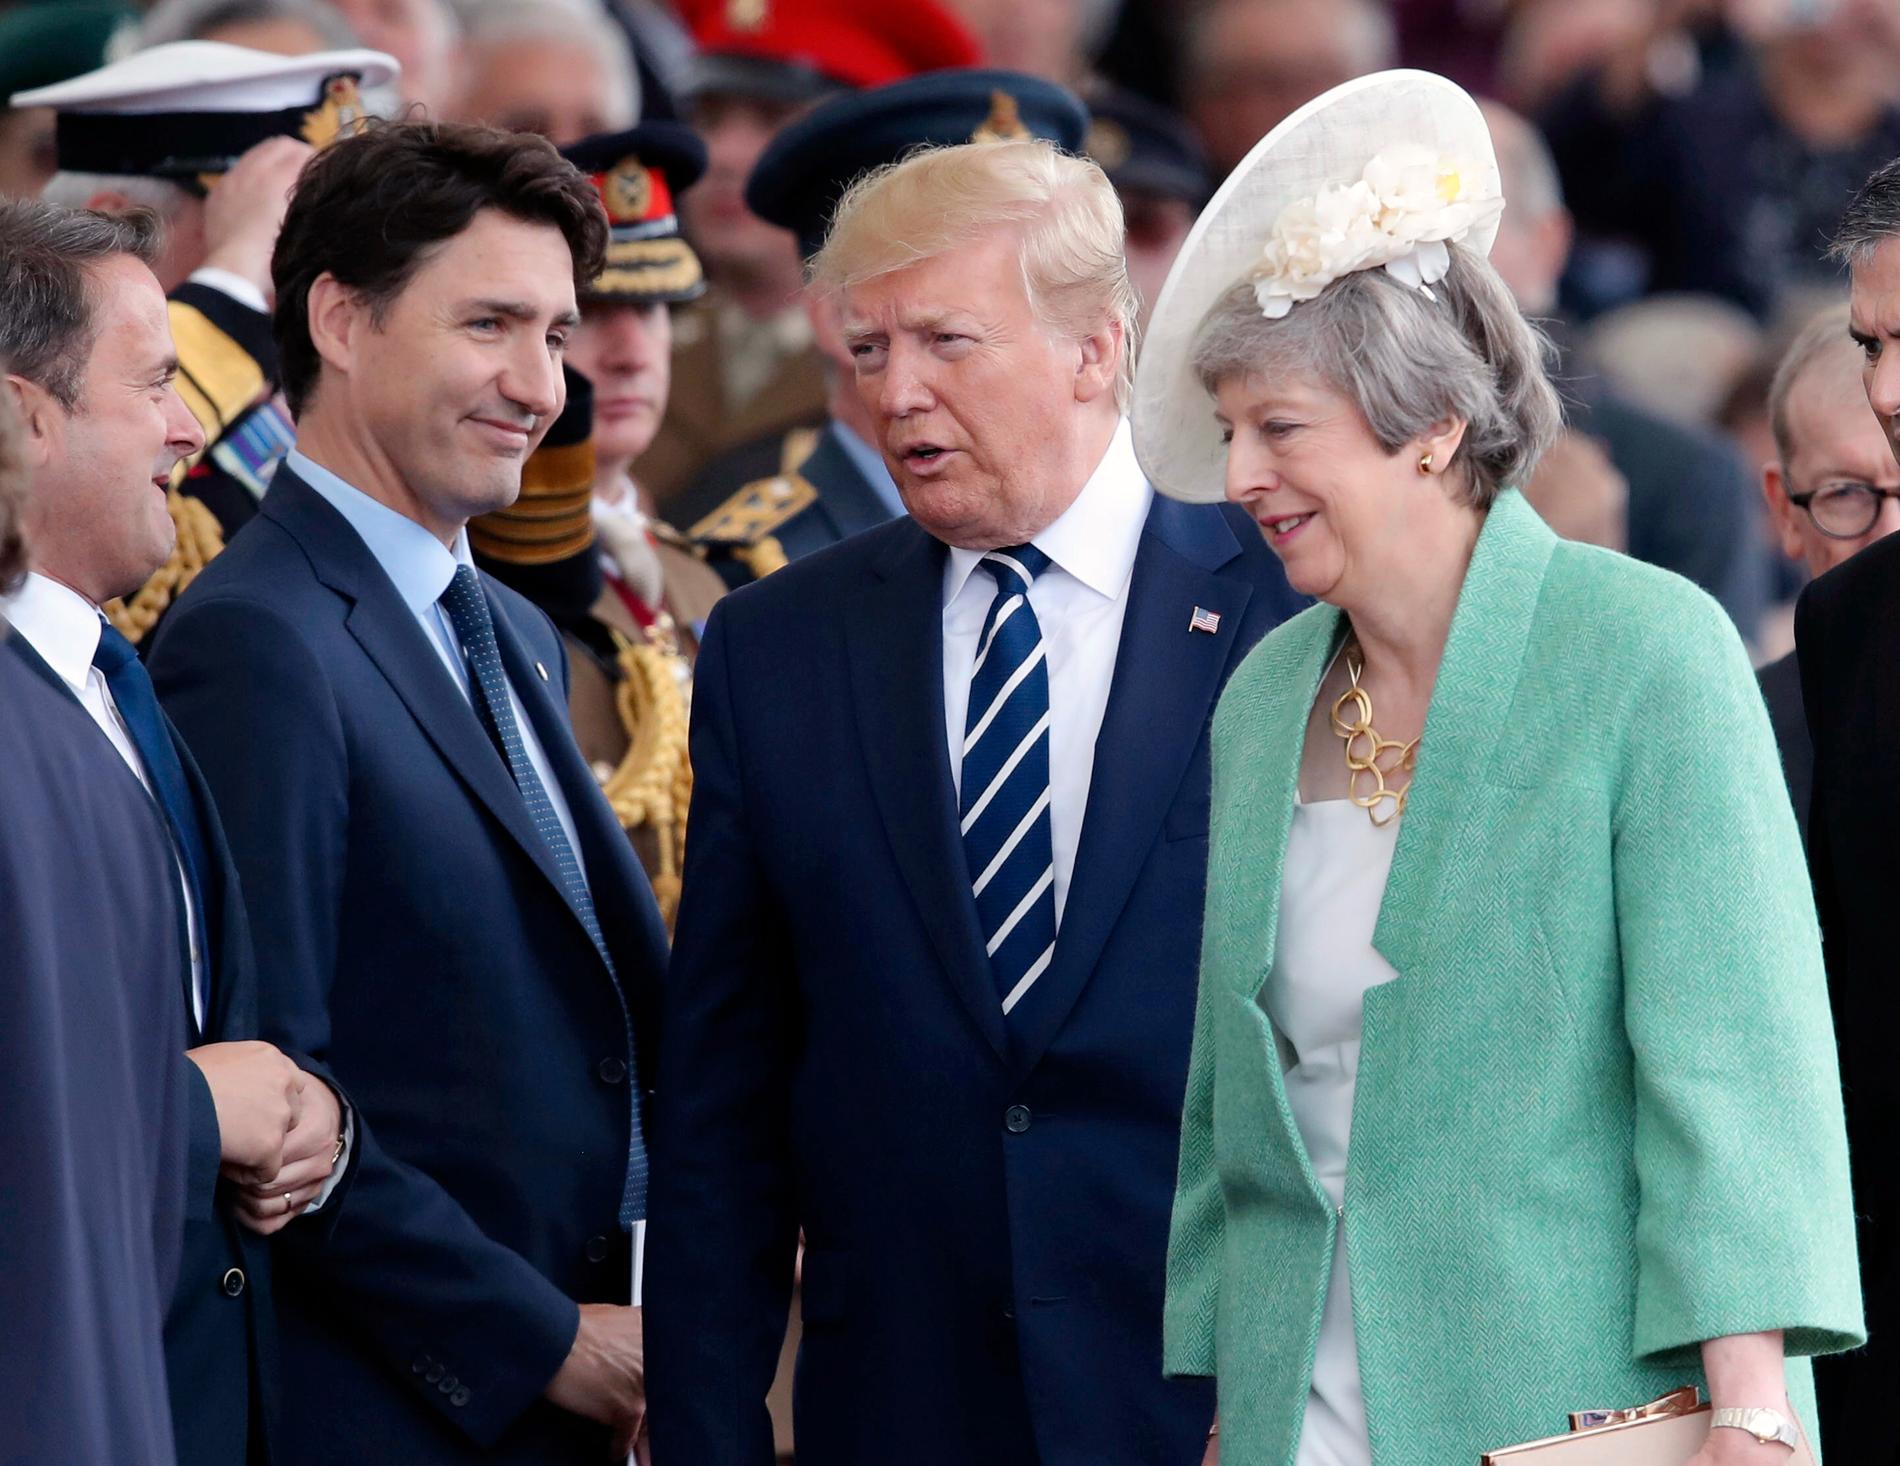 Kanadas premiärminister Justin Trudeau, USA:s president Donald Trump och Storbritanniens premiärminister Theresa May under ceremonin som hålls i Portsmouth med anledning av högtidlighållandet av D-dagen för 75 års sedan.